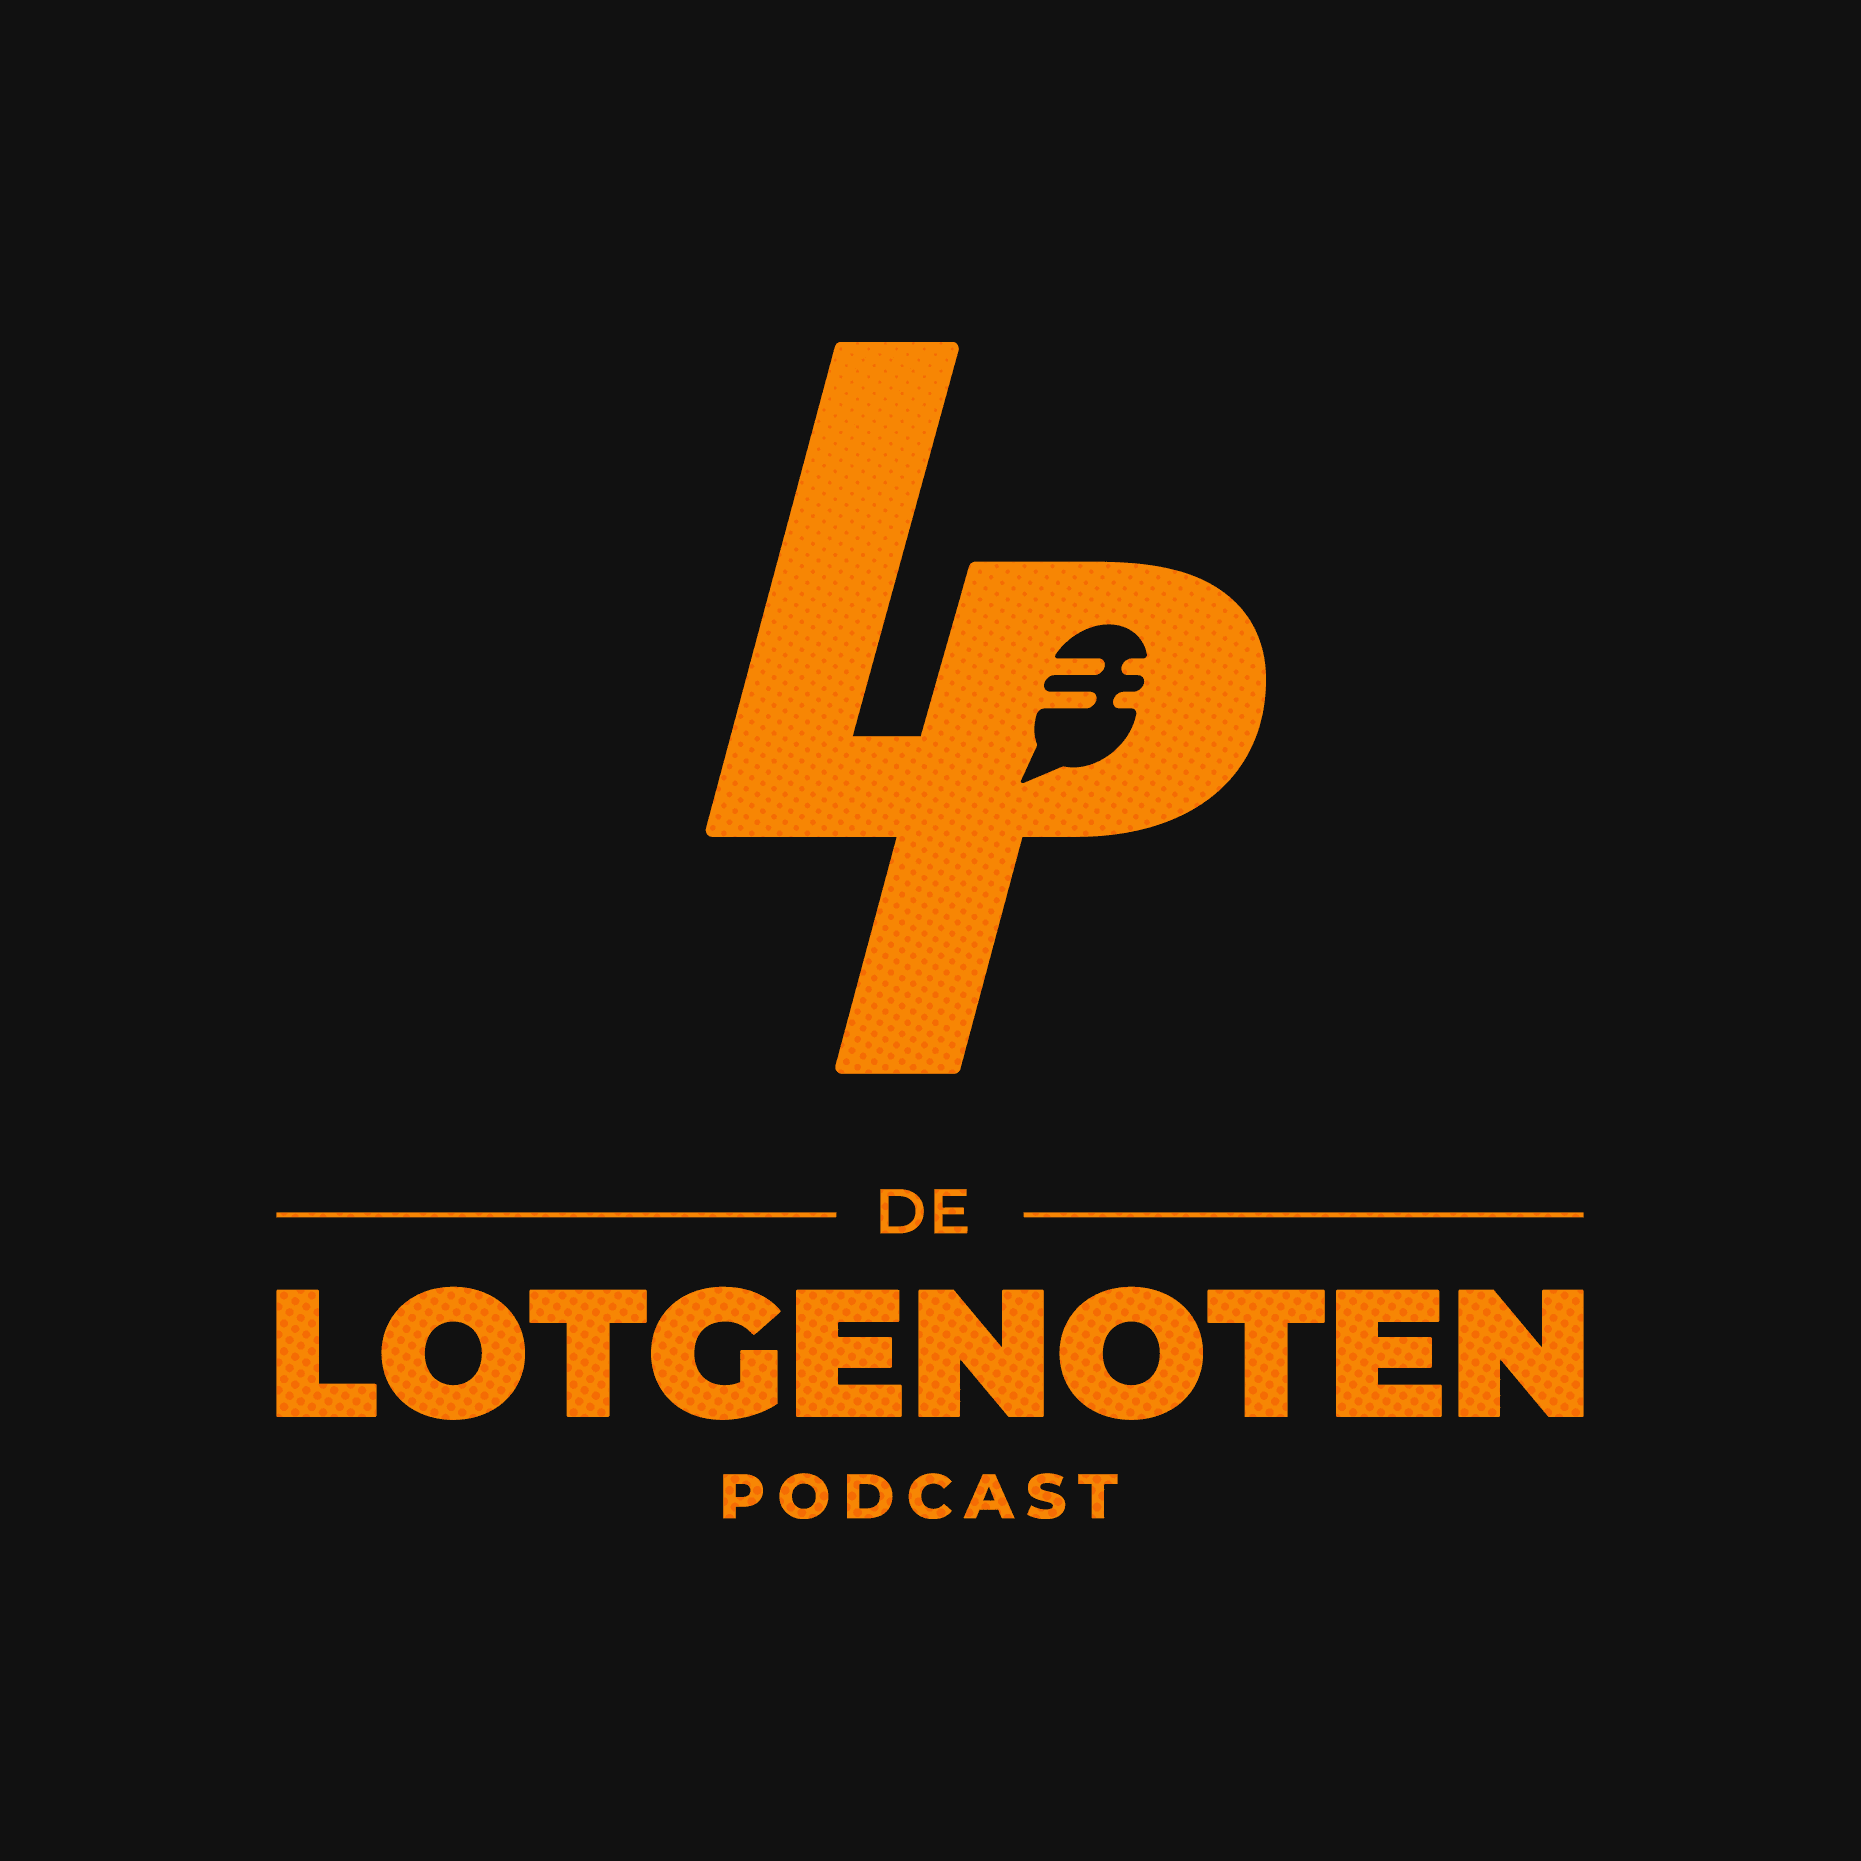 Show artwork for Lotgenoten Podcast